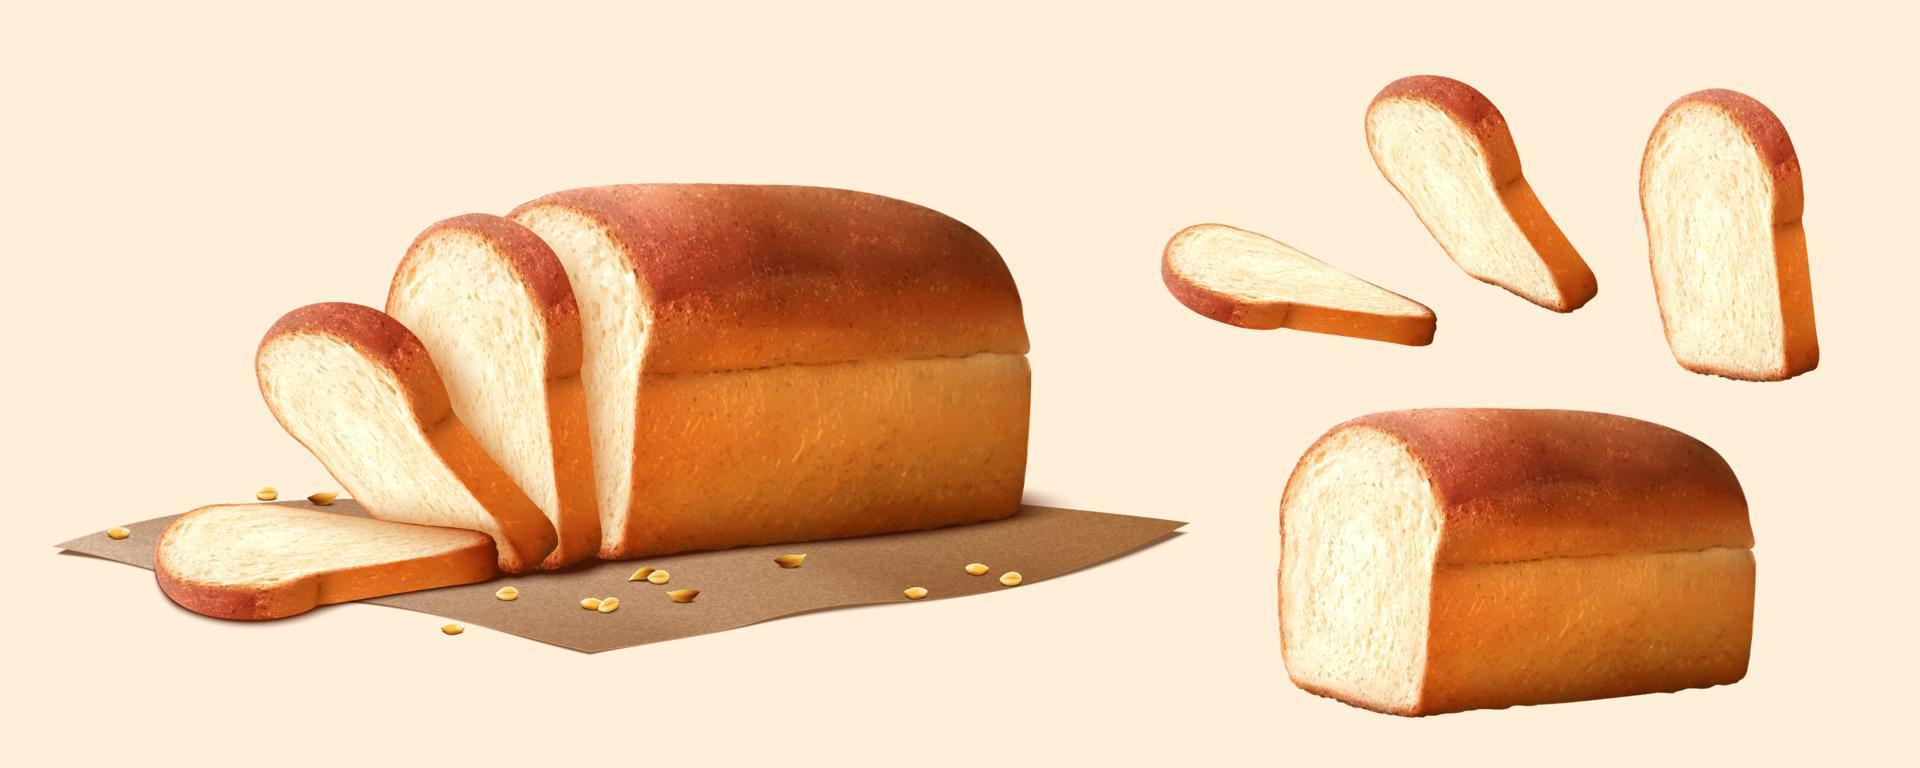 3d illustratie van zacht wit brood wezen gesneden naar stuk en links een brood van brood en versierd met verspreide tarwe granen vector